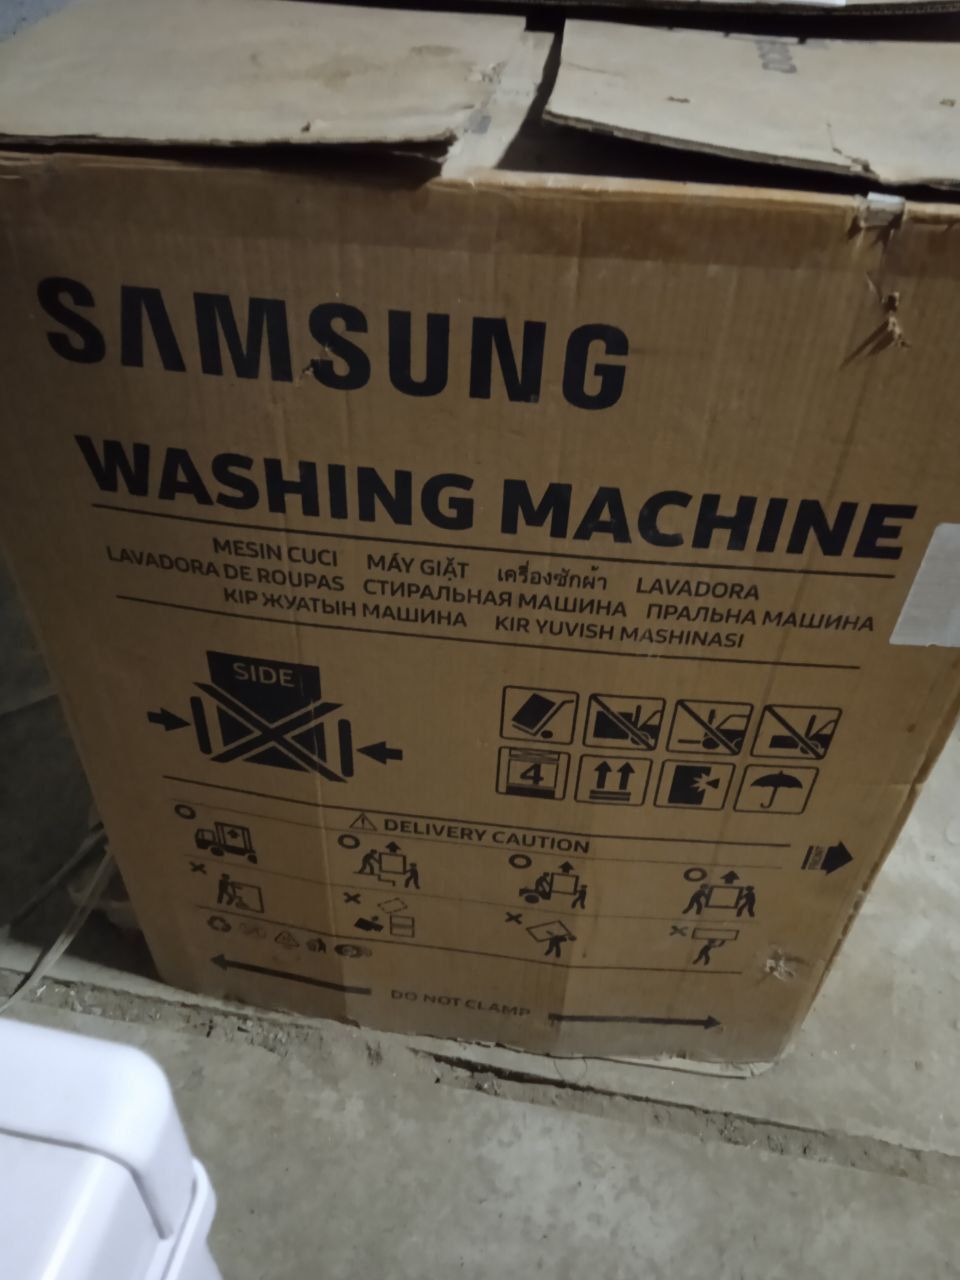 Samsung kir yuvish mashinasi avtomat